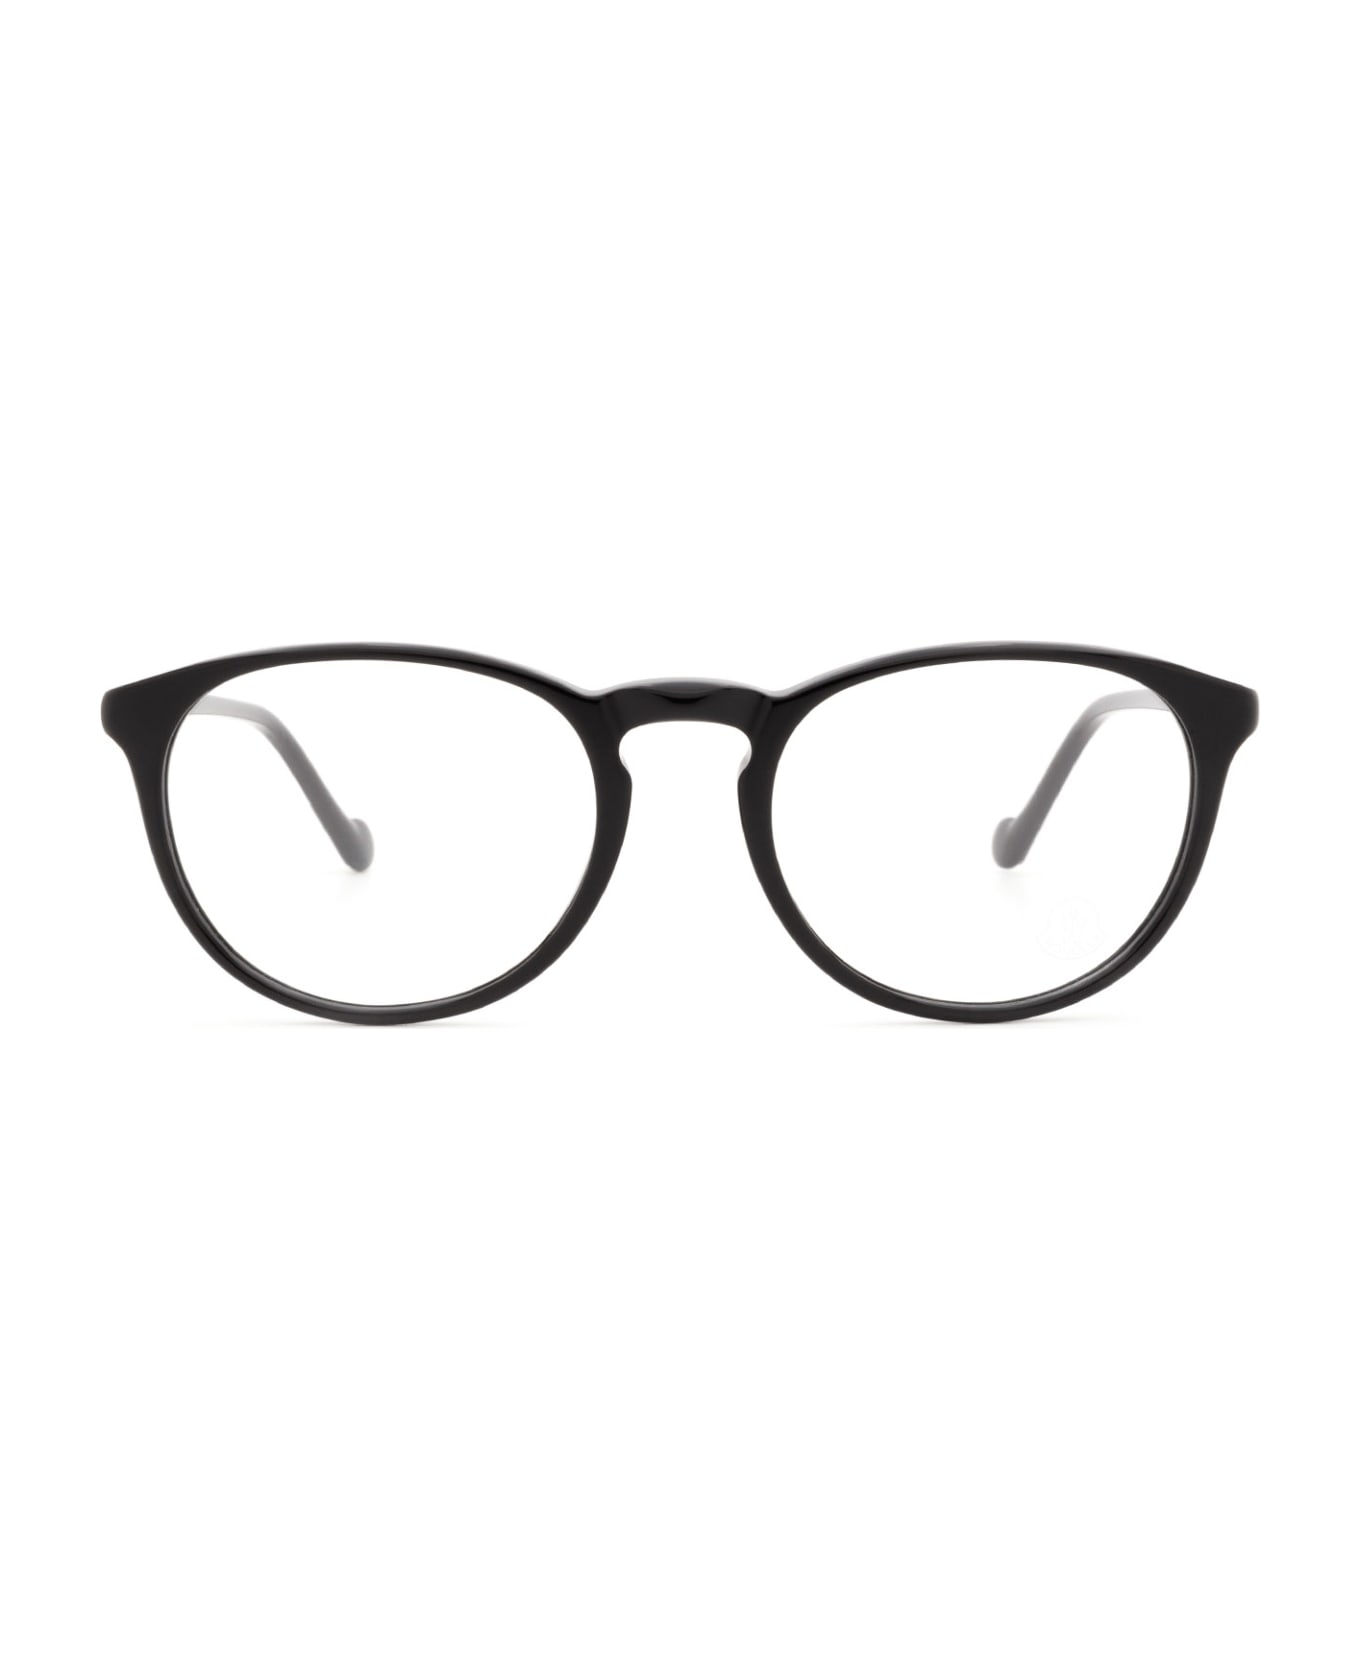 Moncler Eyewear Ml5104 Shiny Black Glasses - Shiny Black アイウェア